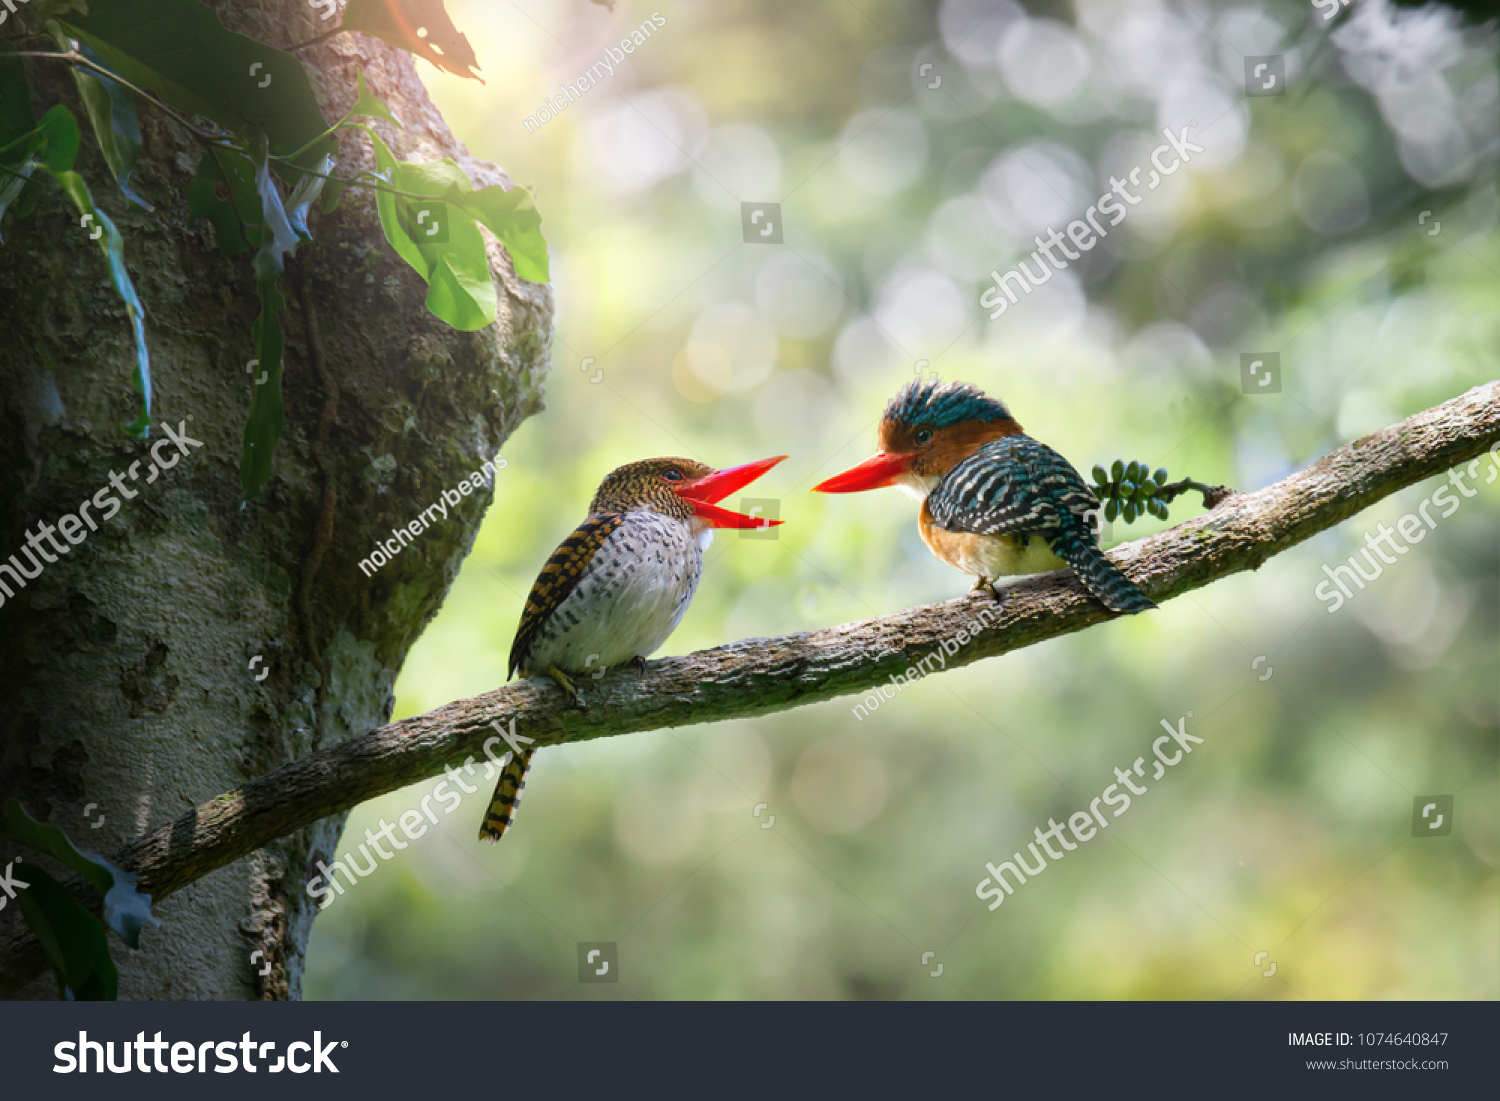 ボケの森の背景に 歌を歌い 顔を見合わせた美しいバンディング キングフィッシャー 鳥が恋に落ちる の写真素材 今すぐ編集